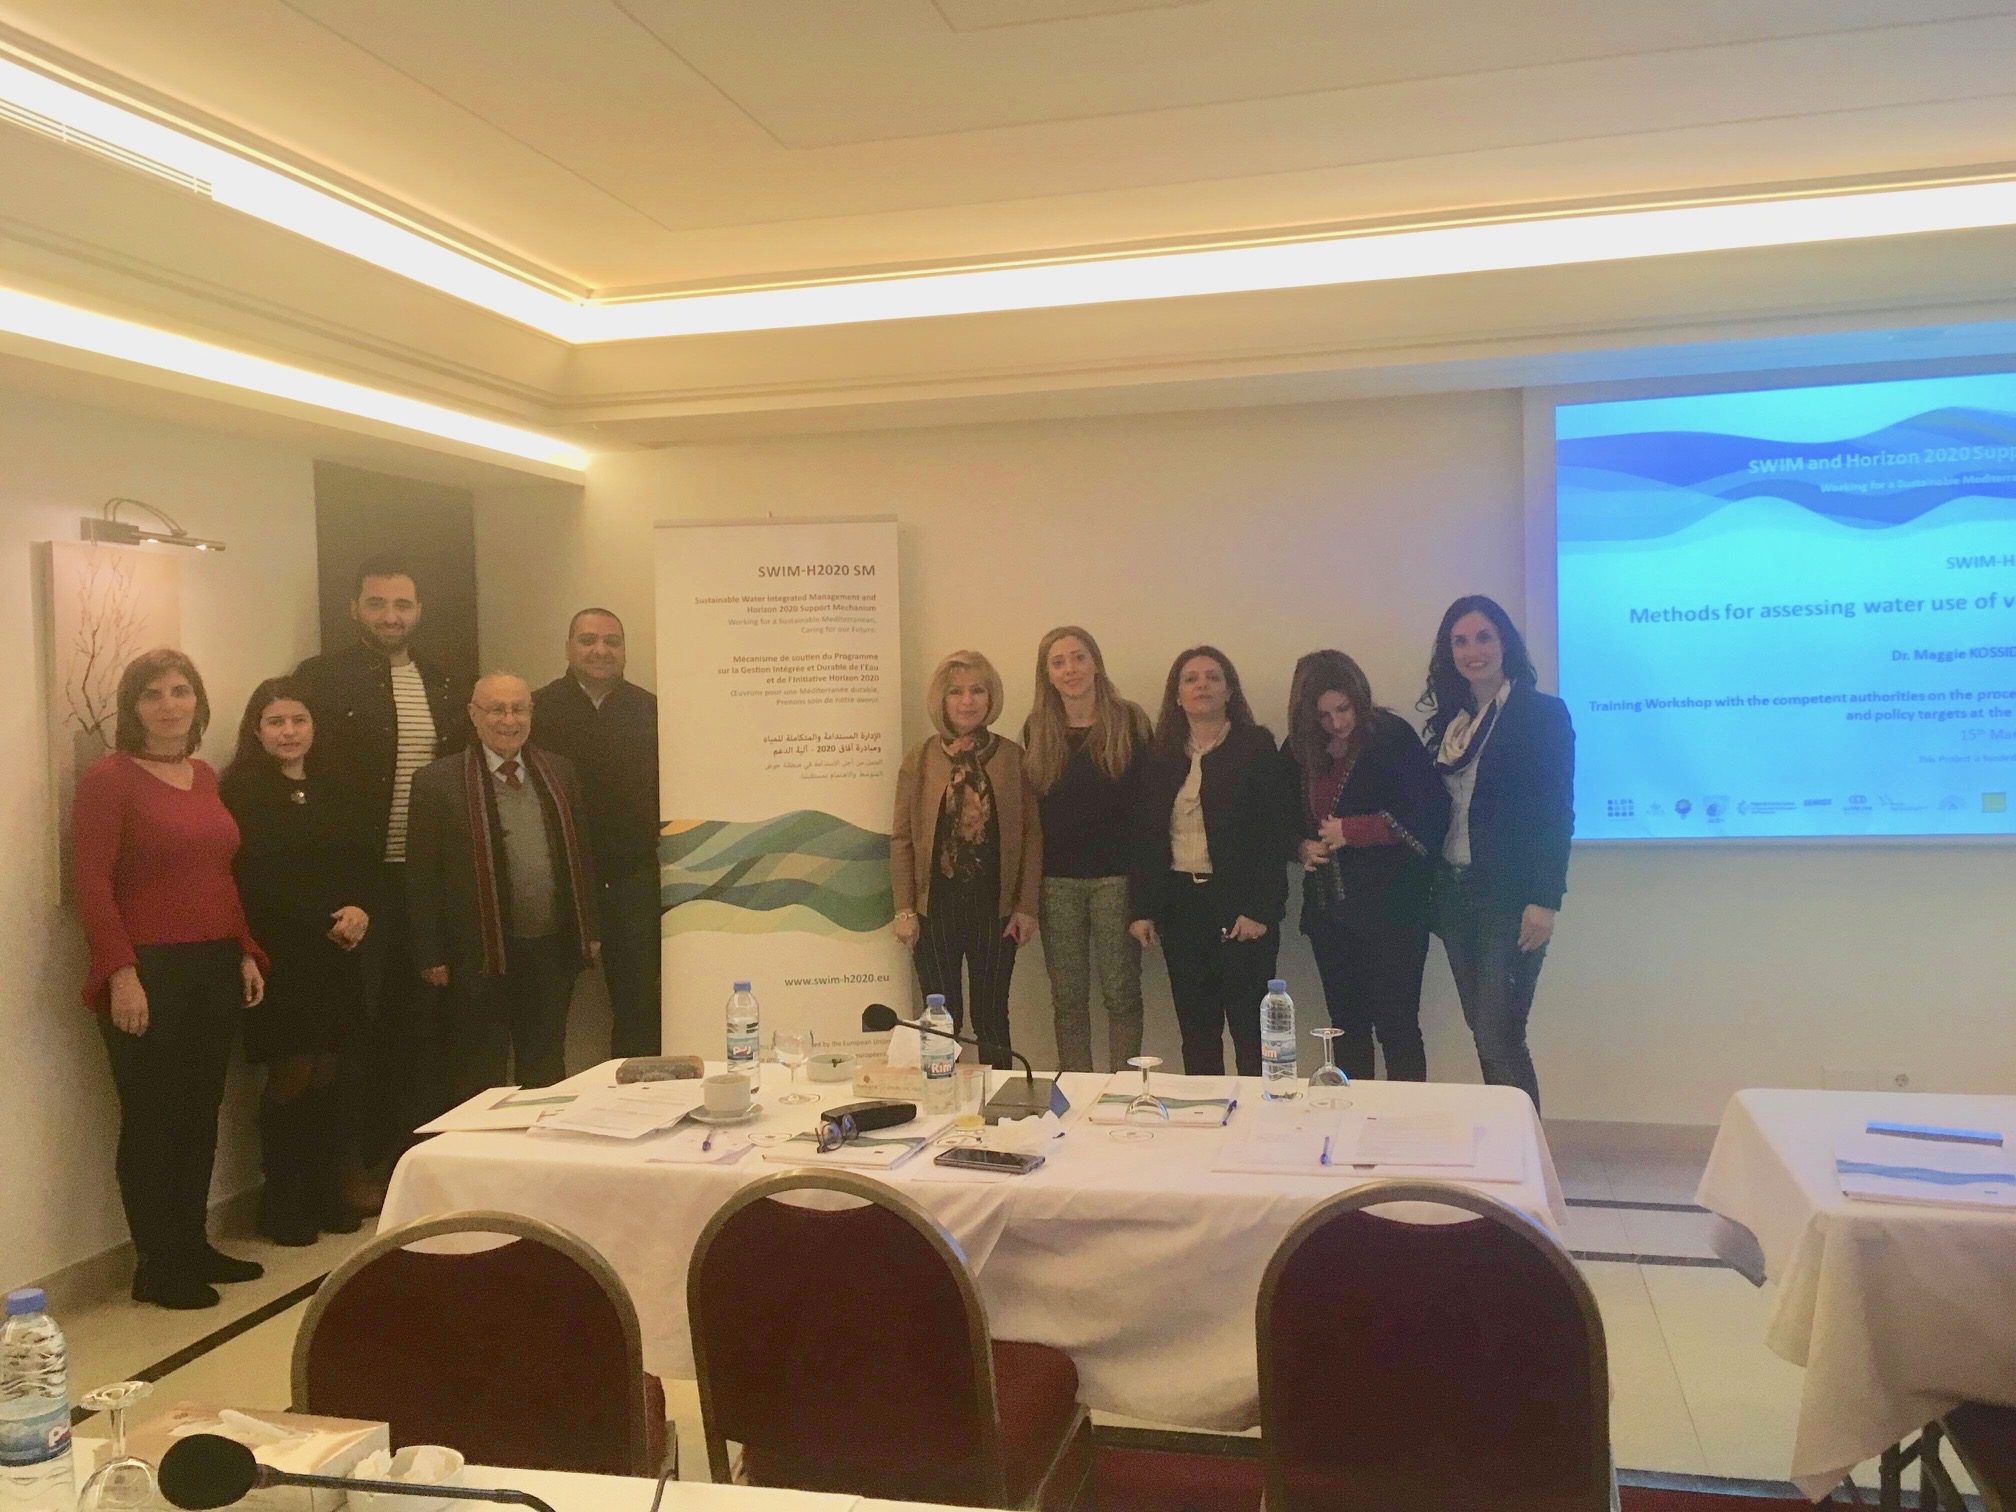 15 mars 2019, Beyrouth, Liban – SWIM-H2020 SM Atelier de formation  sur la conception de mesures de gestion de l’eau et d’objectifs politiques au niveau local / décentralisé